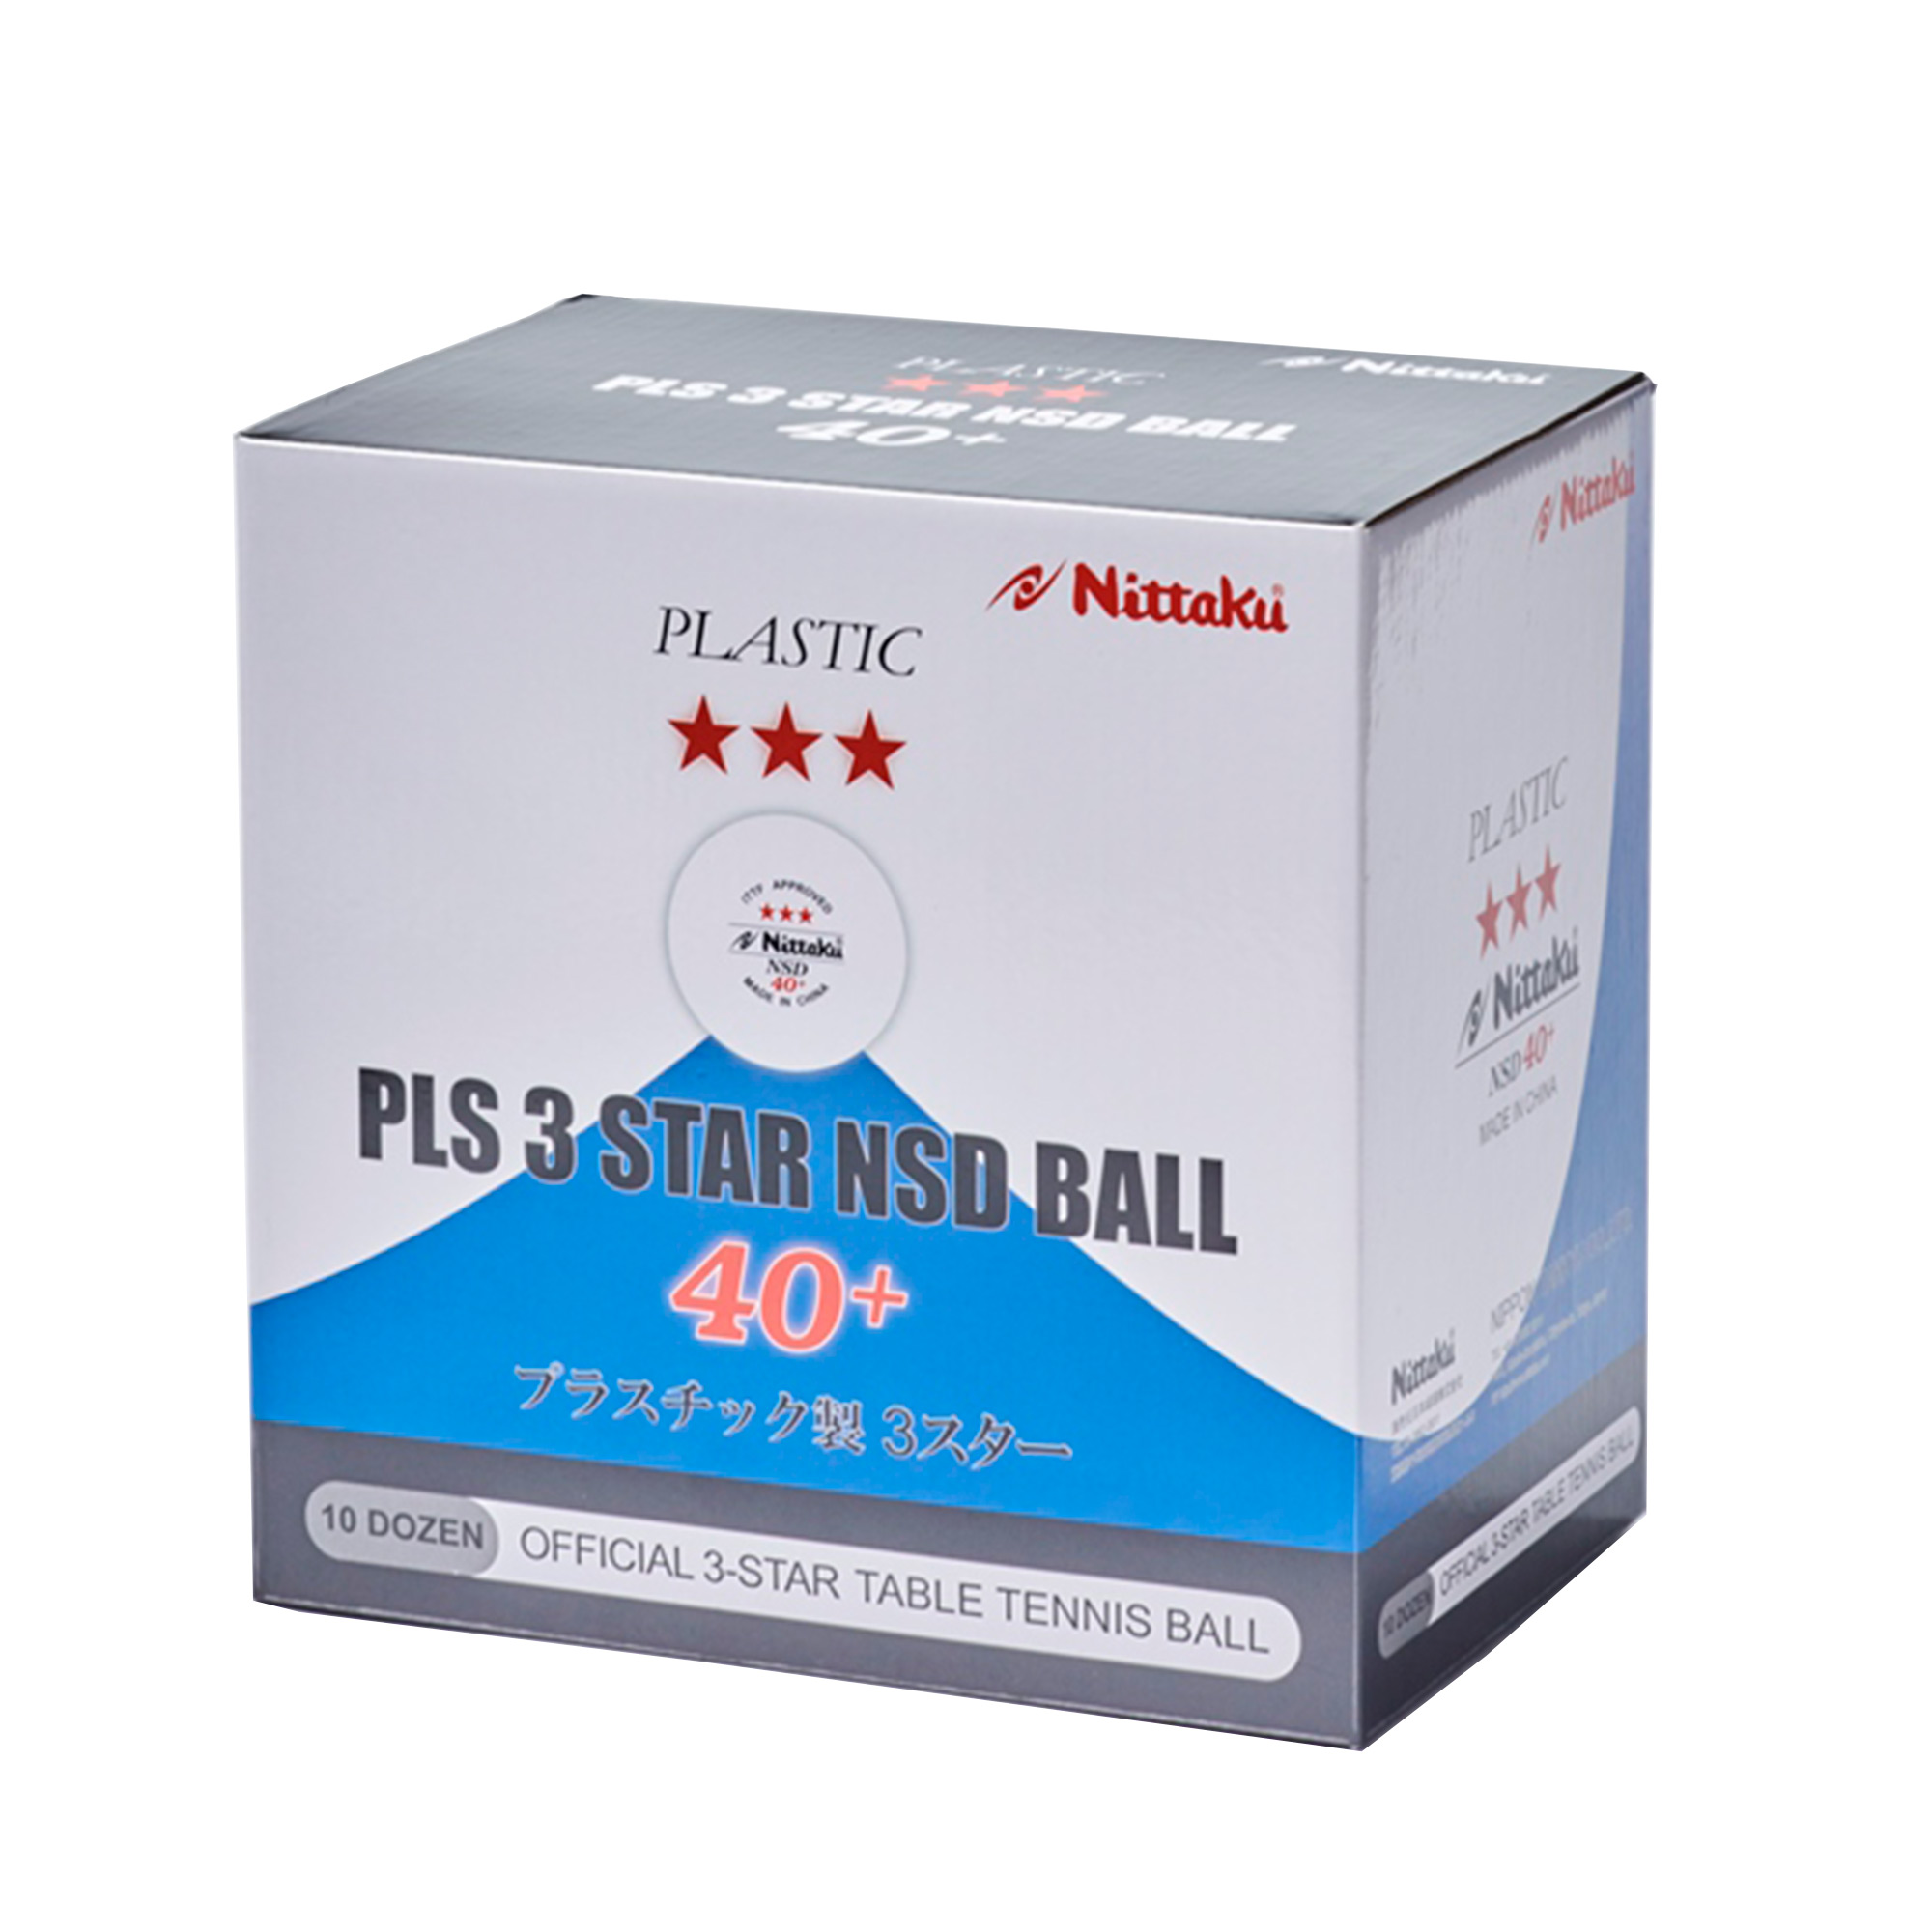 Nittaku Ball SD 40+ *** 120er weiß